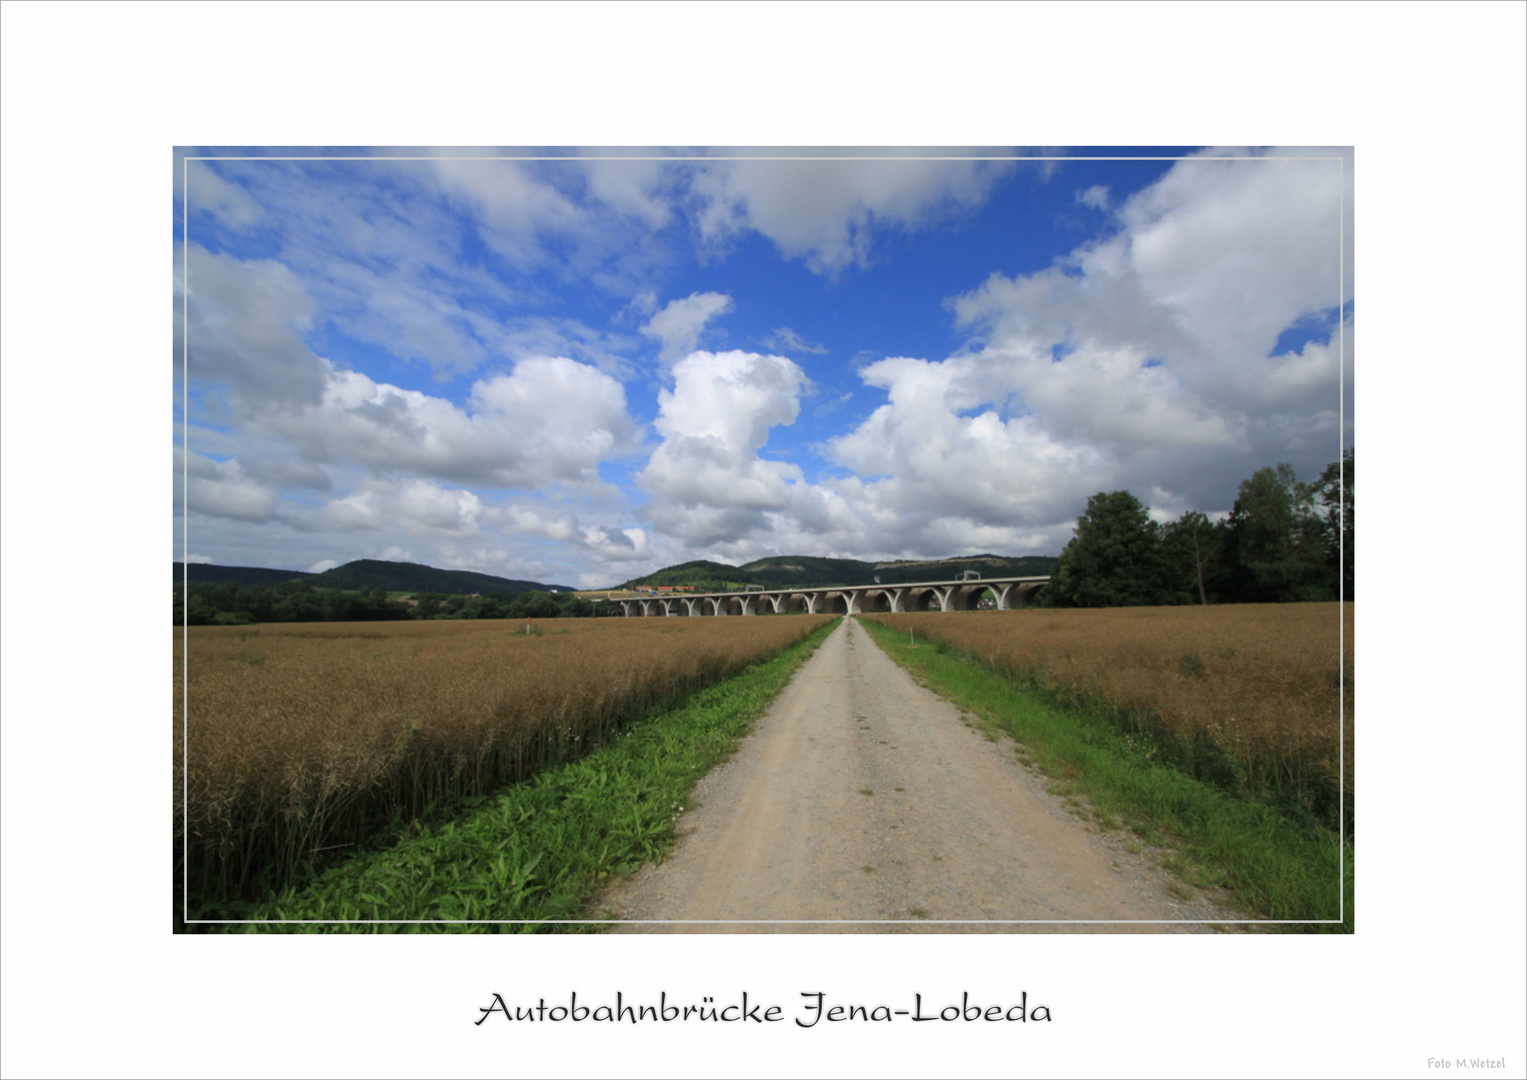 Autobahnbrücke bei Jena Lobeda